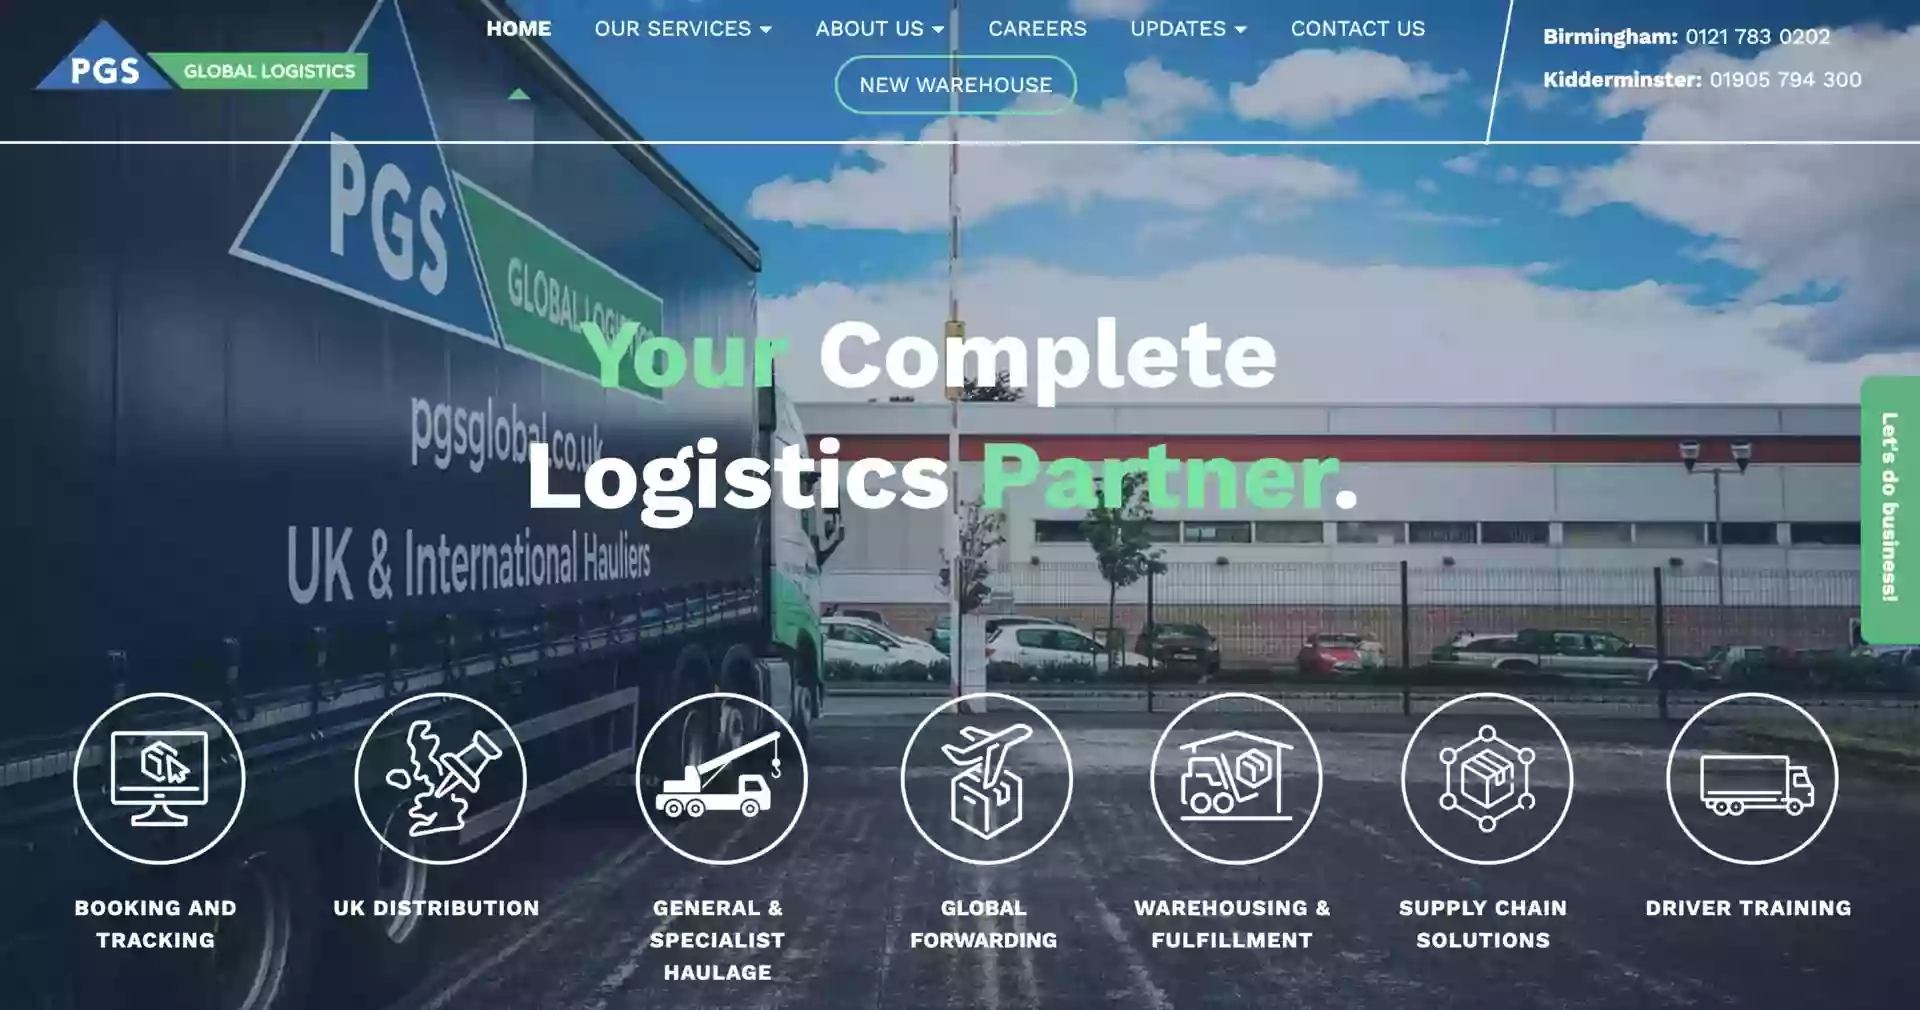 PGS Global Logistics Ltd